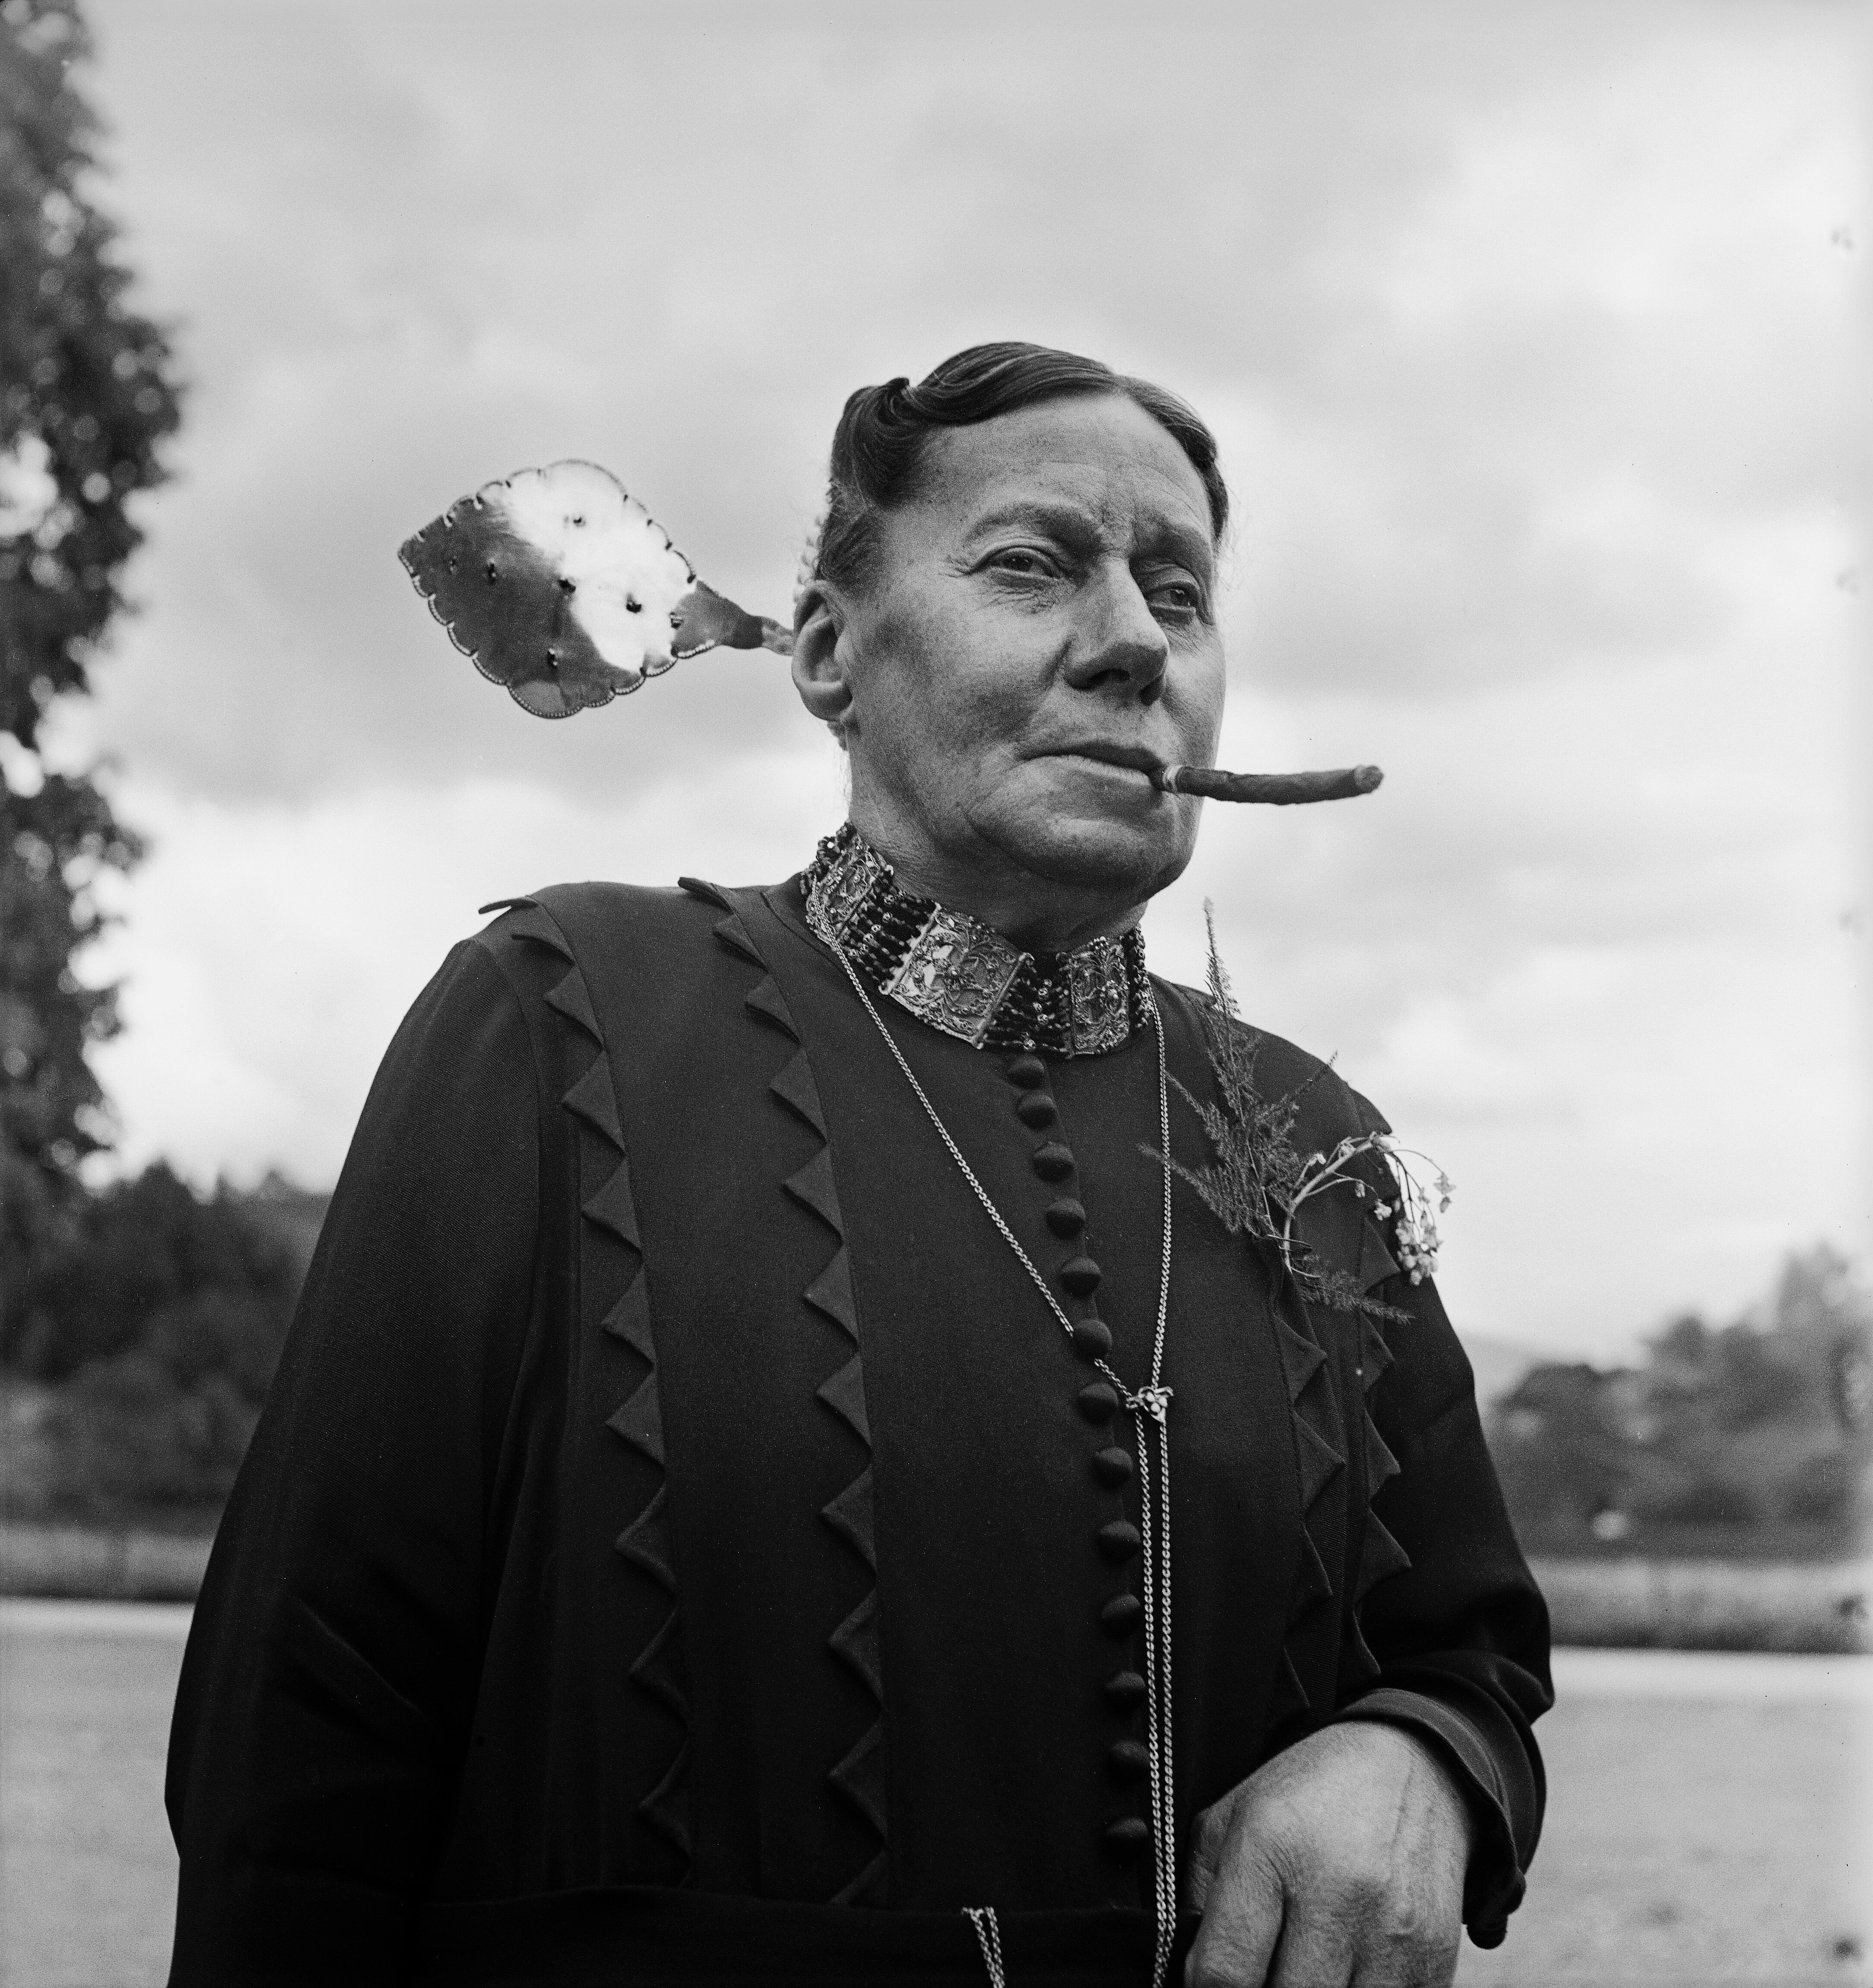 Катарина Анжелика Лусси. Серебряная заколка в волосах указывает на одиночество женщины. Обердорф, 1940-е. Фотограф Леонард фон Матт